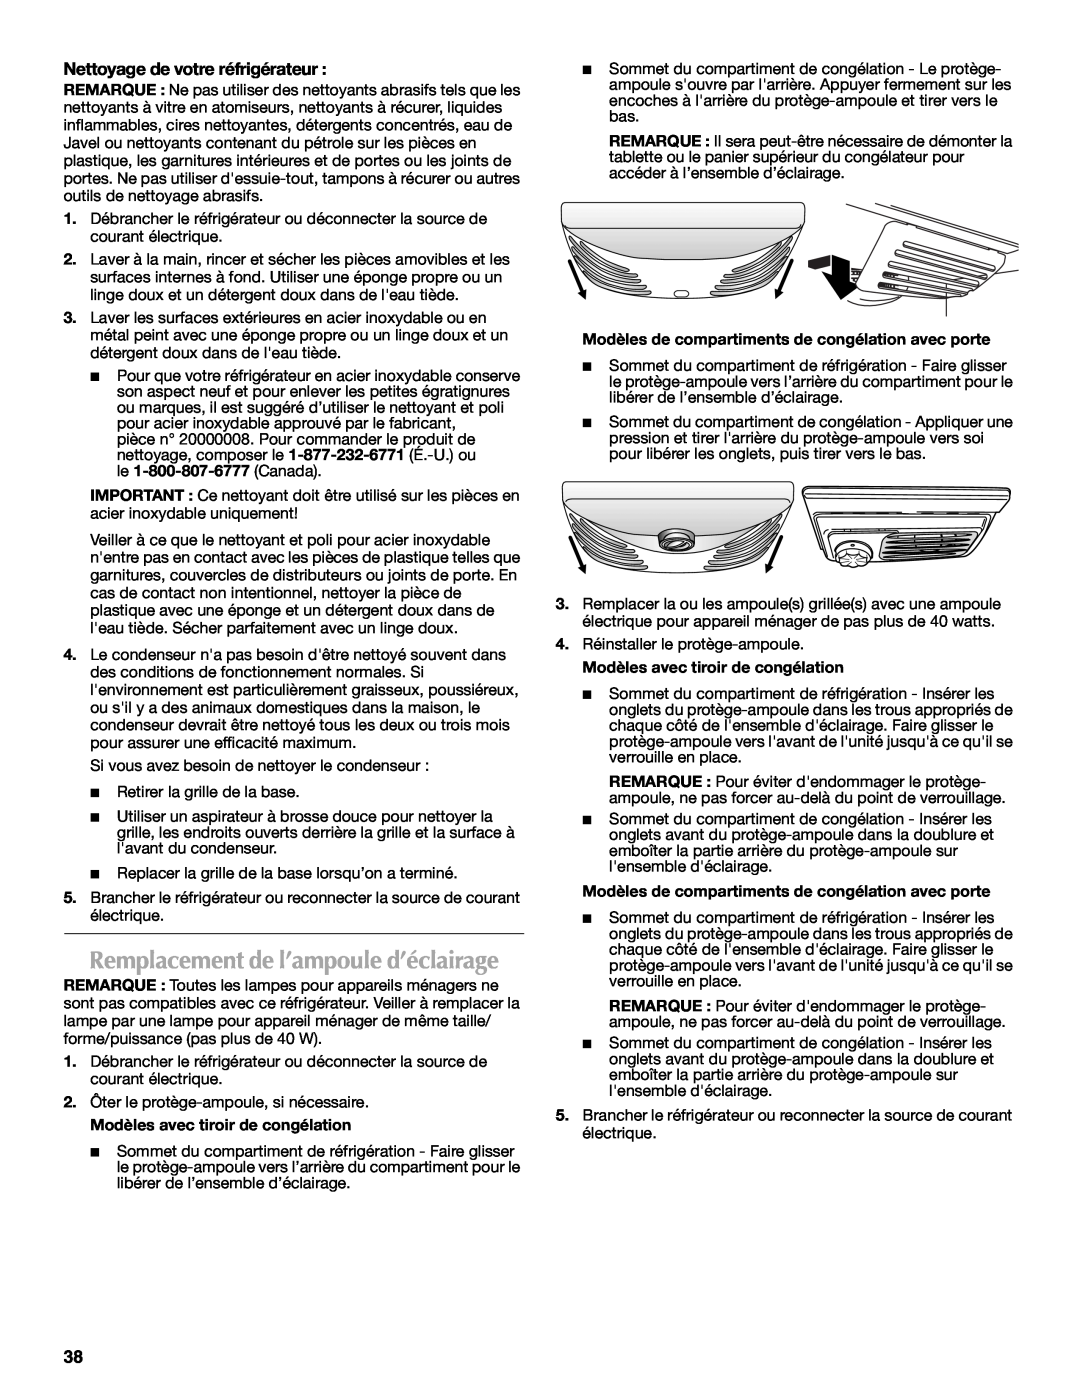 Maytag W10175446B manual Remplacement de l’ampoule d’éclairage, Nettoyage de votre réfrigérateur 